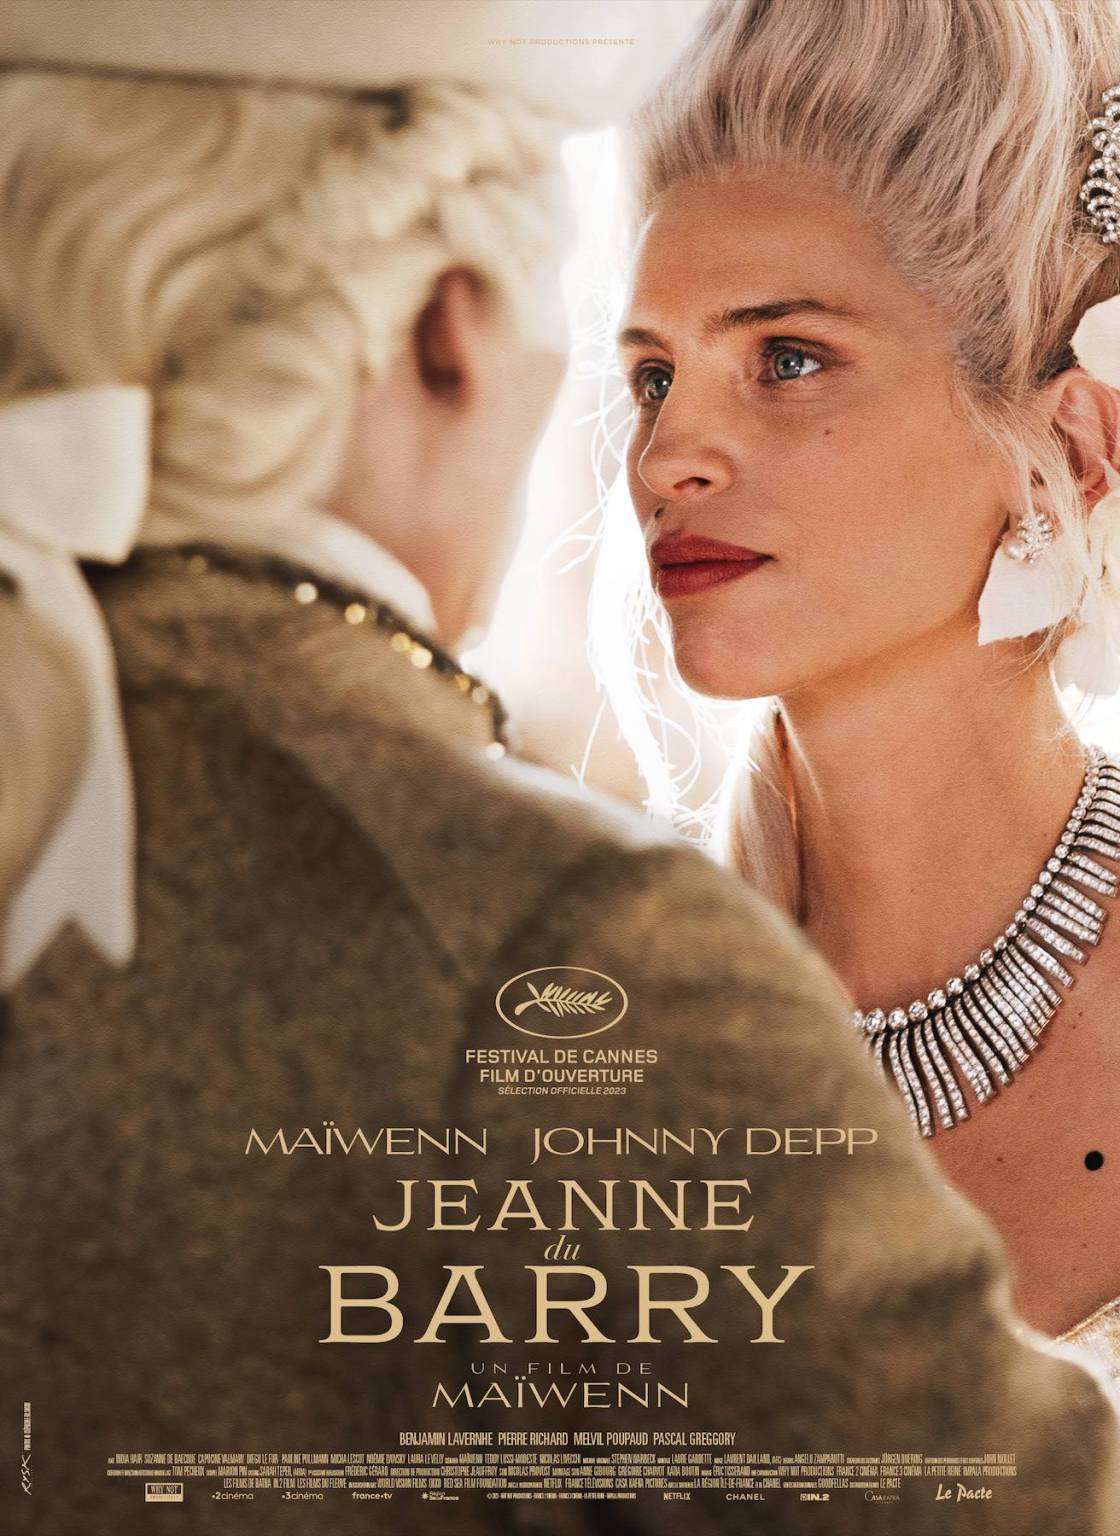 Cartaz do filme Jeanne du Barry, exibido no primeiro dia do Festival de Cannes. Reprodução/Divulgação